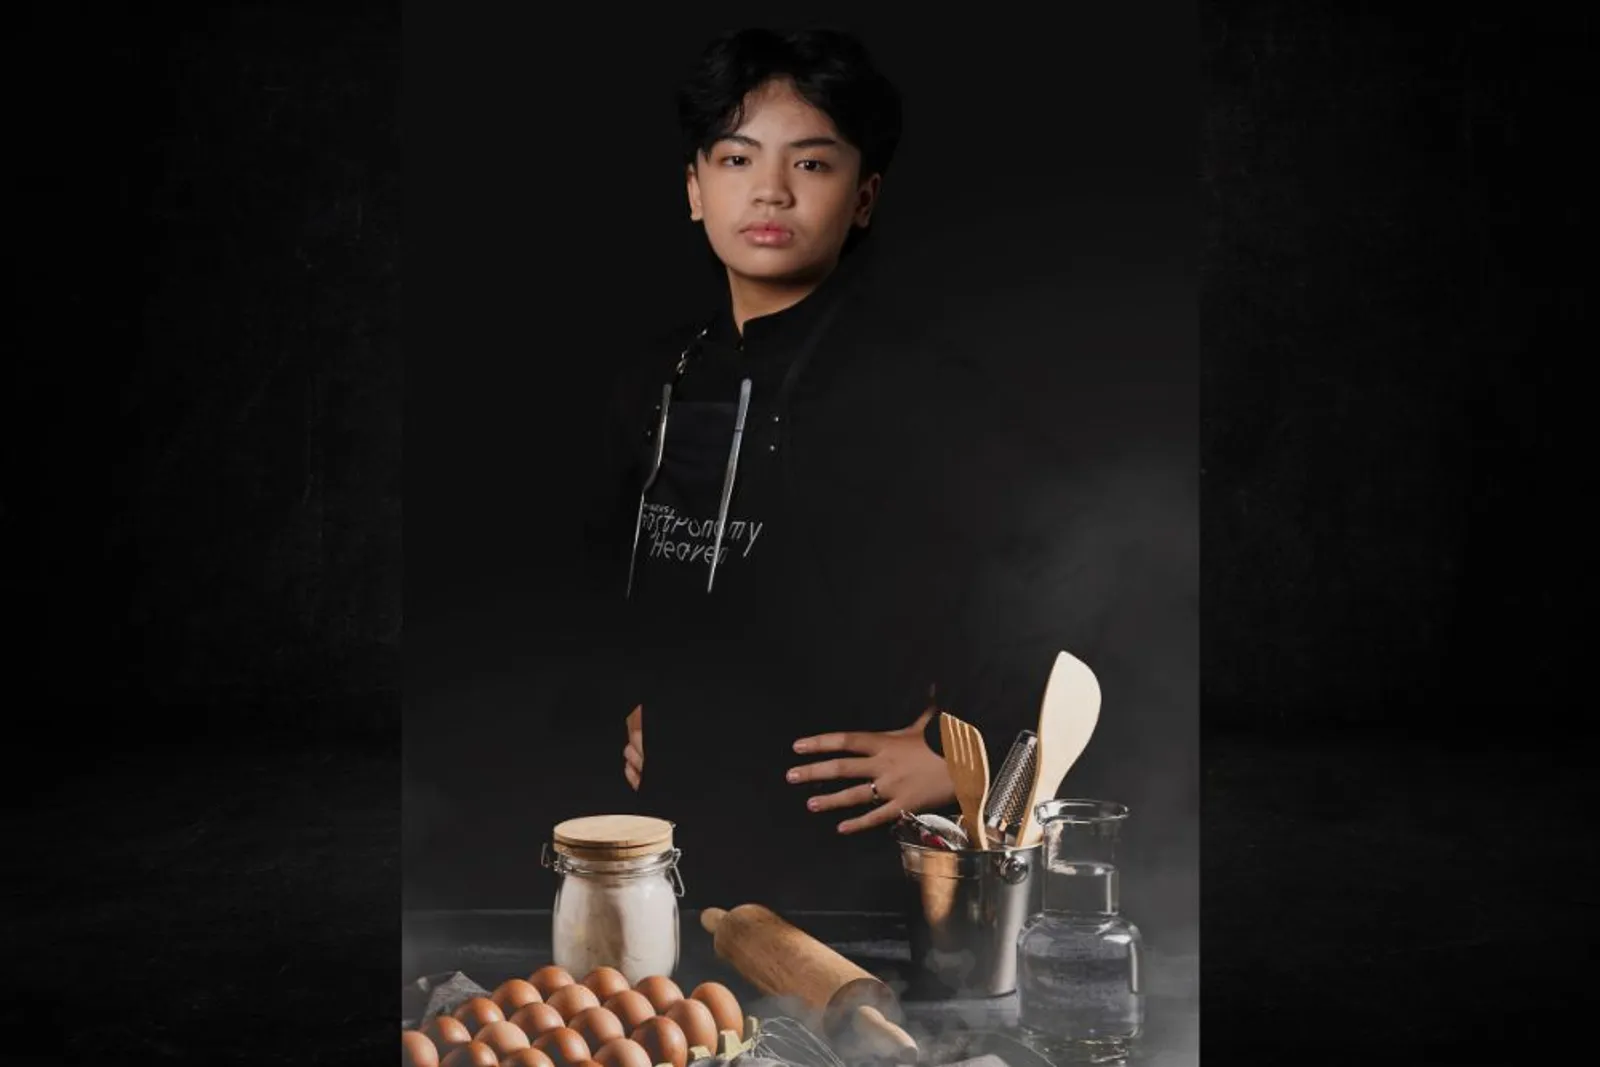 Nairo Nagata, Chef Usia 13 Tahun yang Membuka Bisnis Kuliner Sendiri